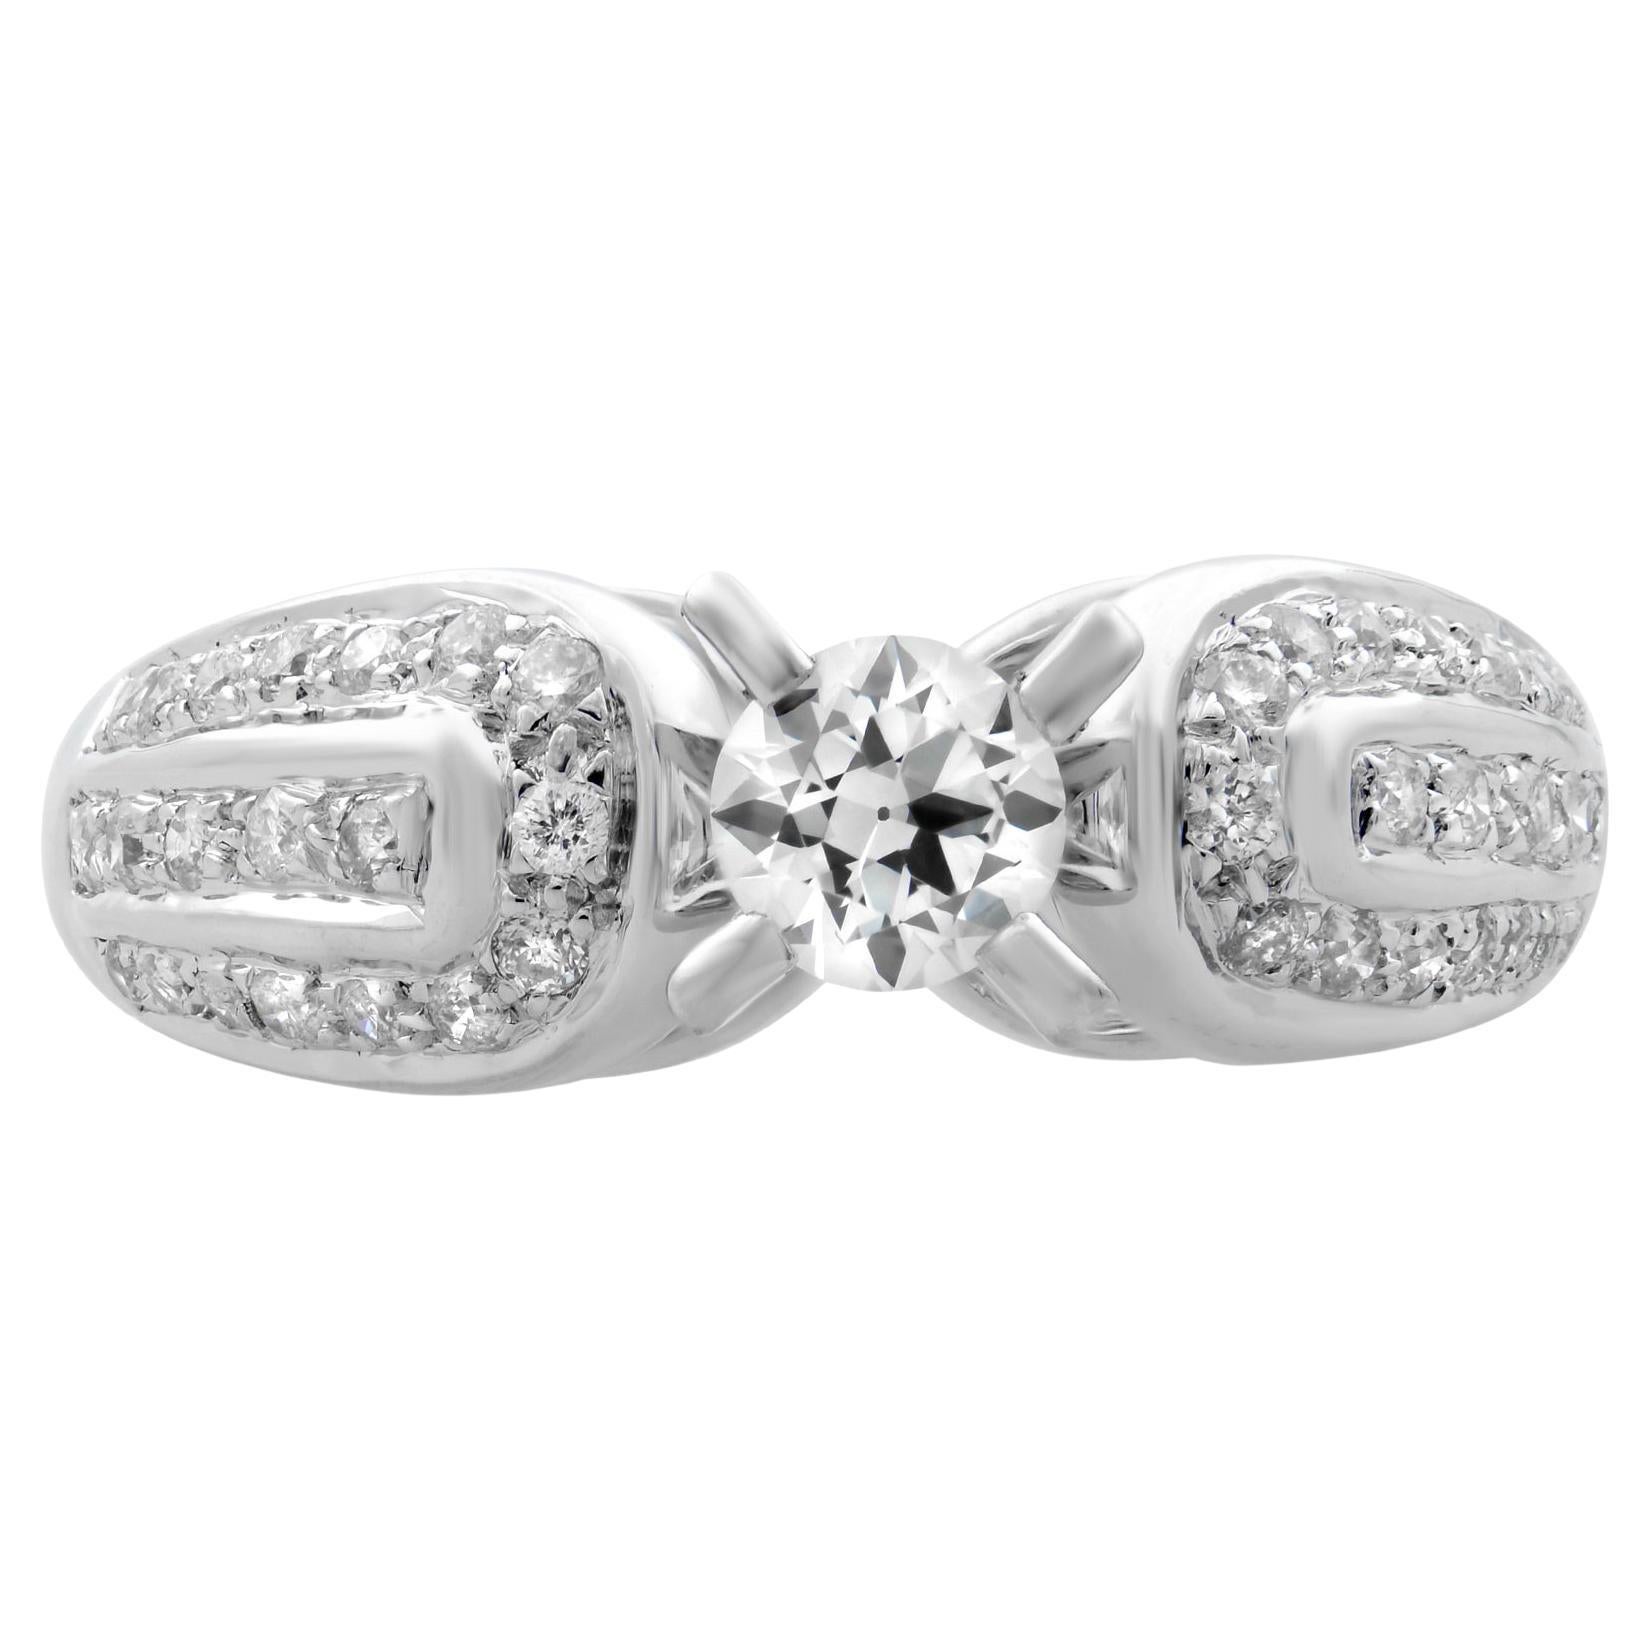 Rachel Koen Diamond Engagement Ring 14K White Gold 0.50cttw